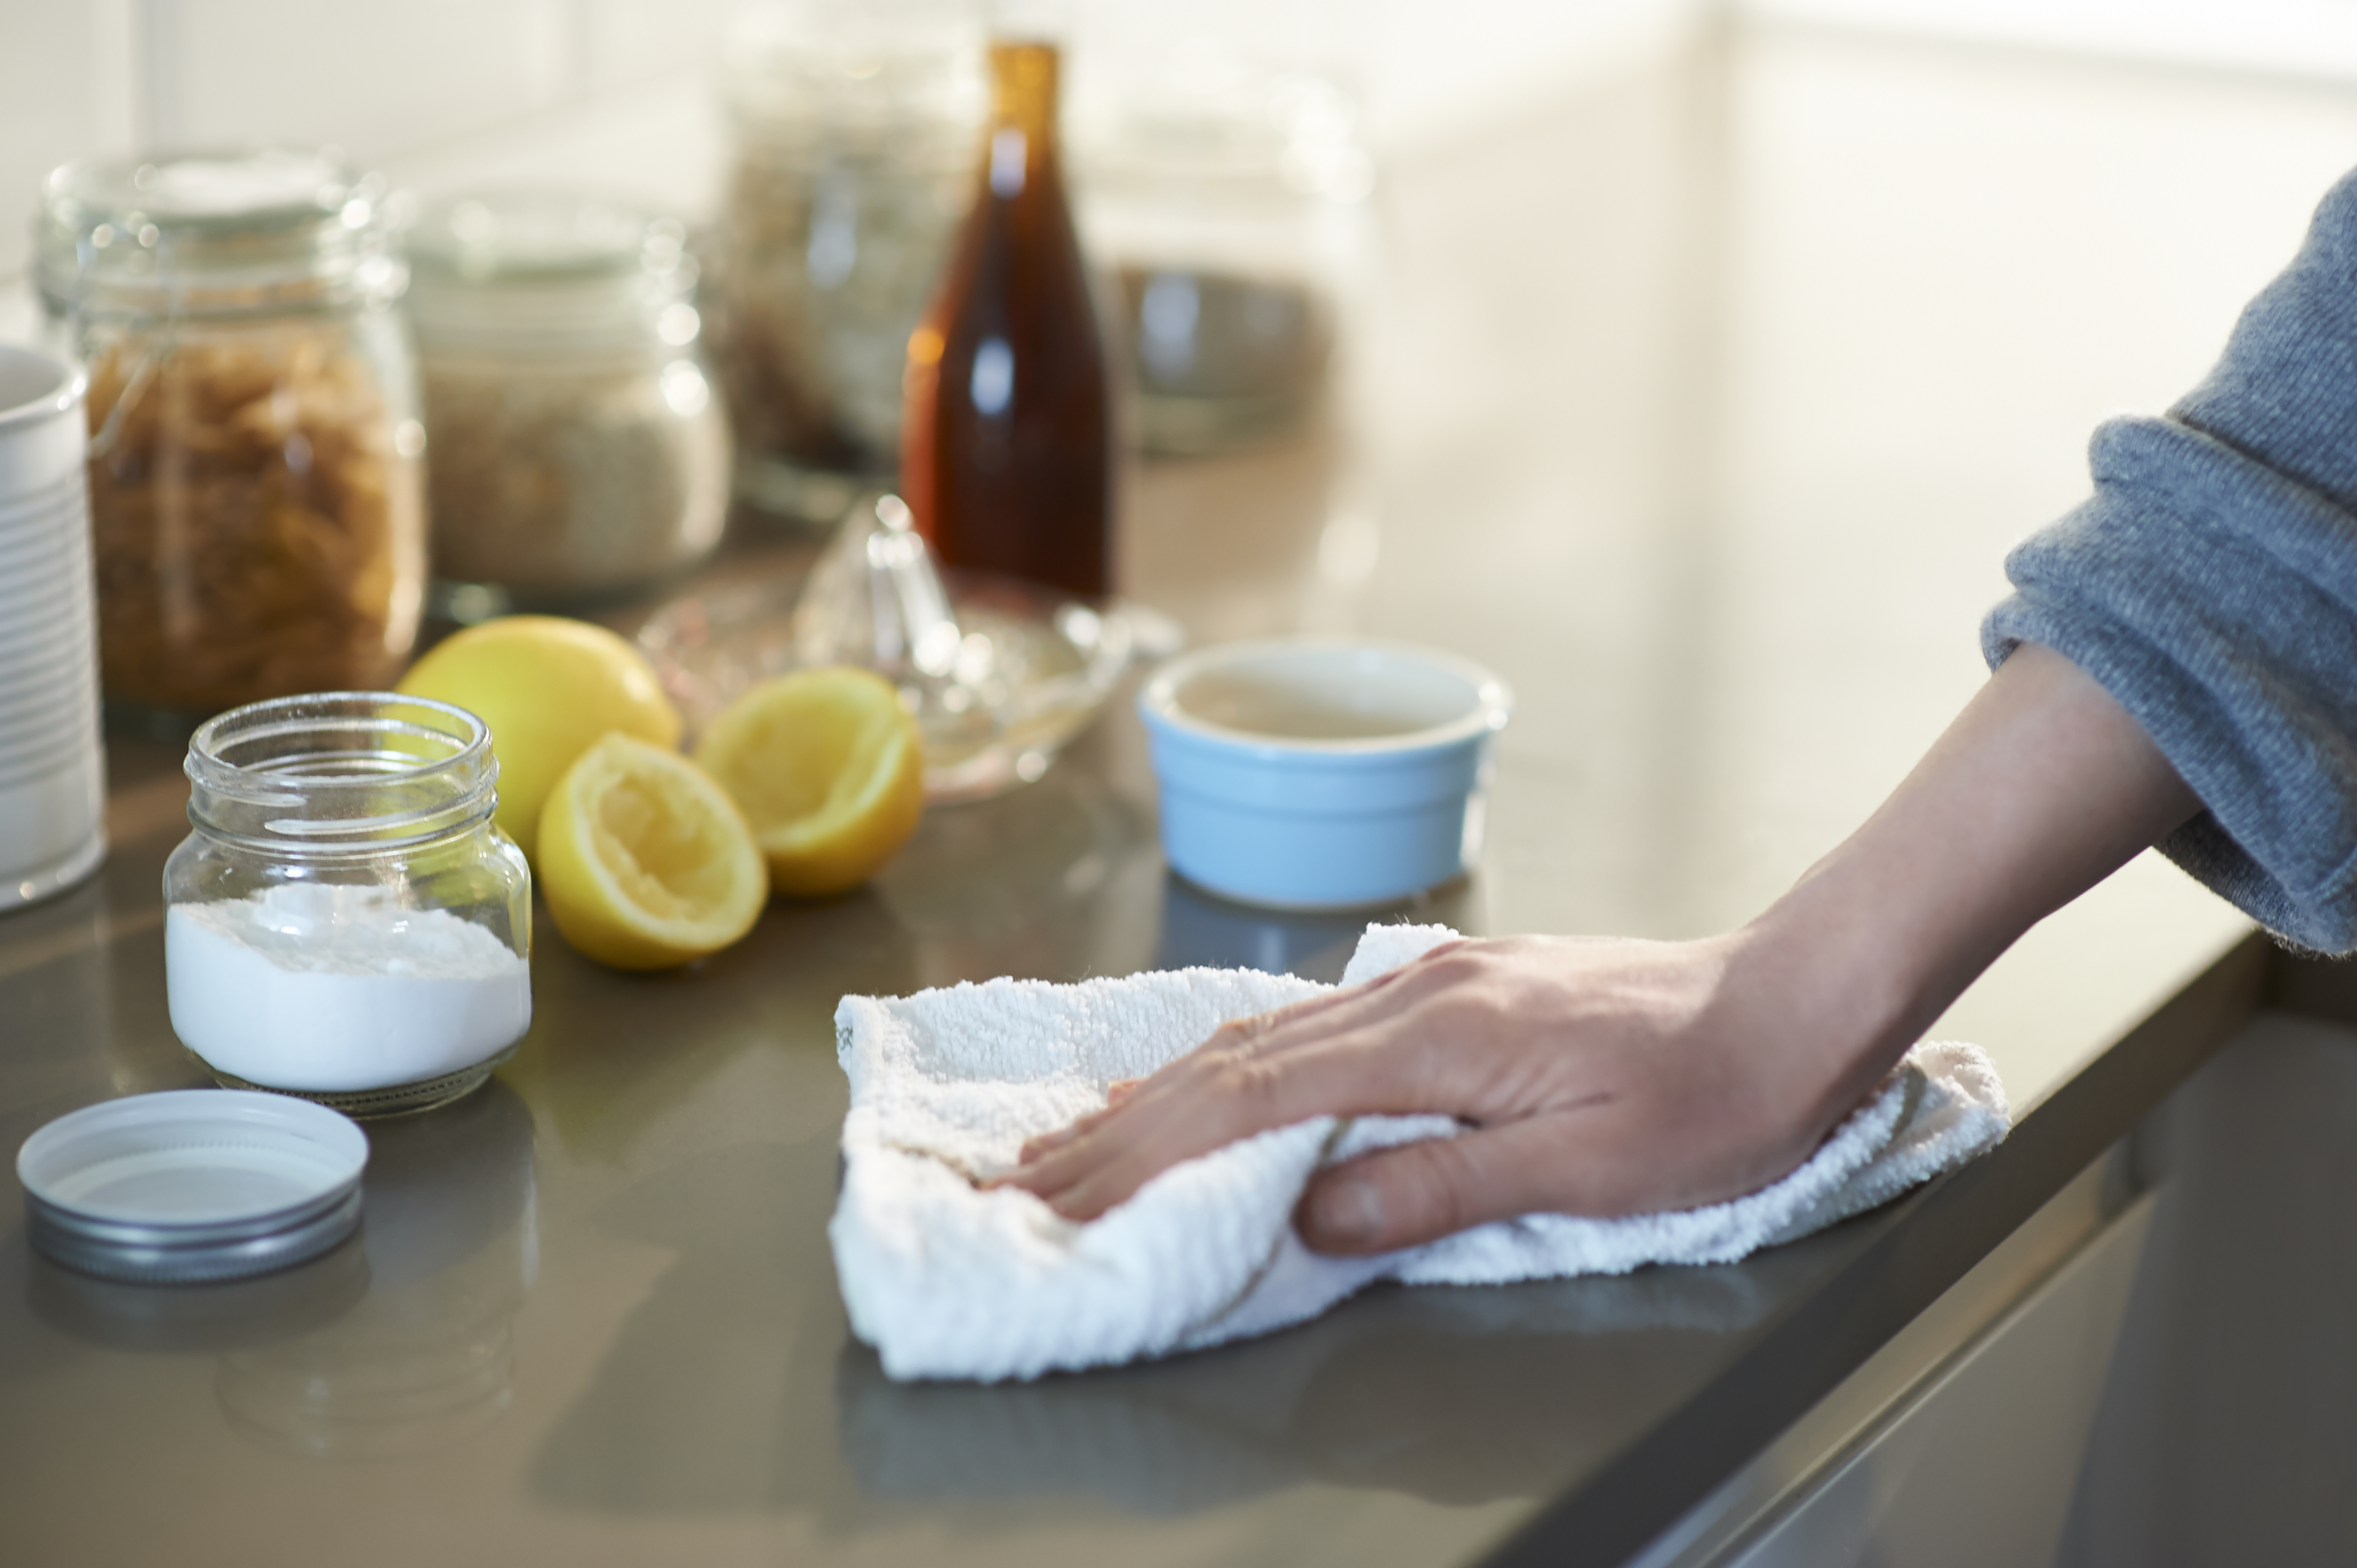 Vinagre y bicarbonato de sodio y sus múltiples usos en la limpieza del hogar